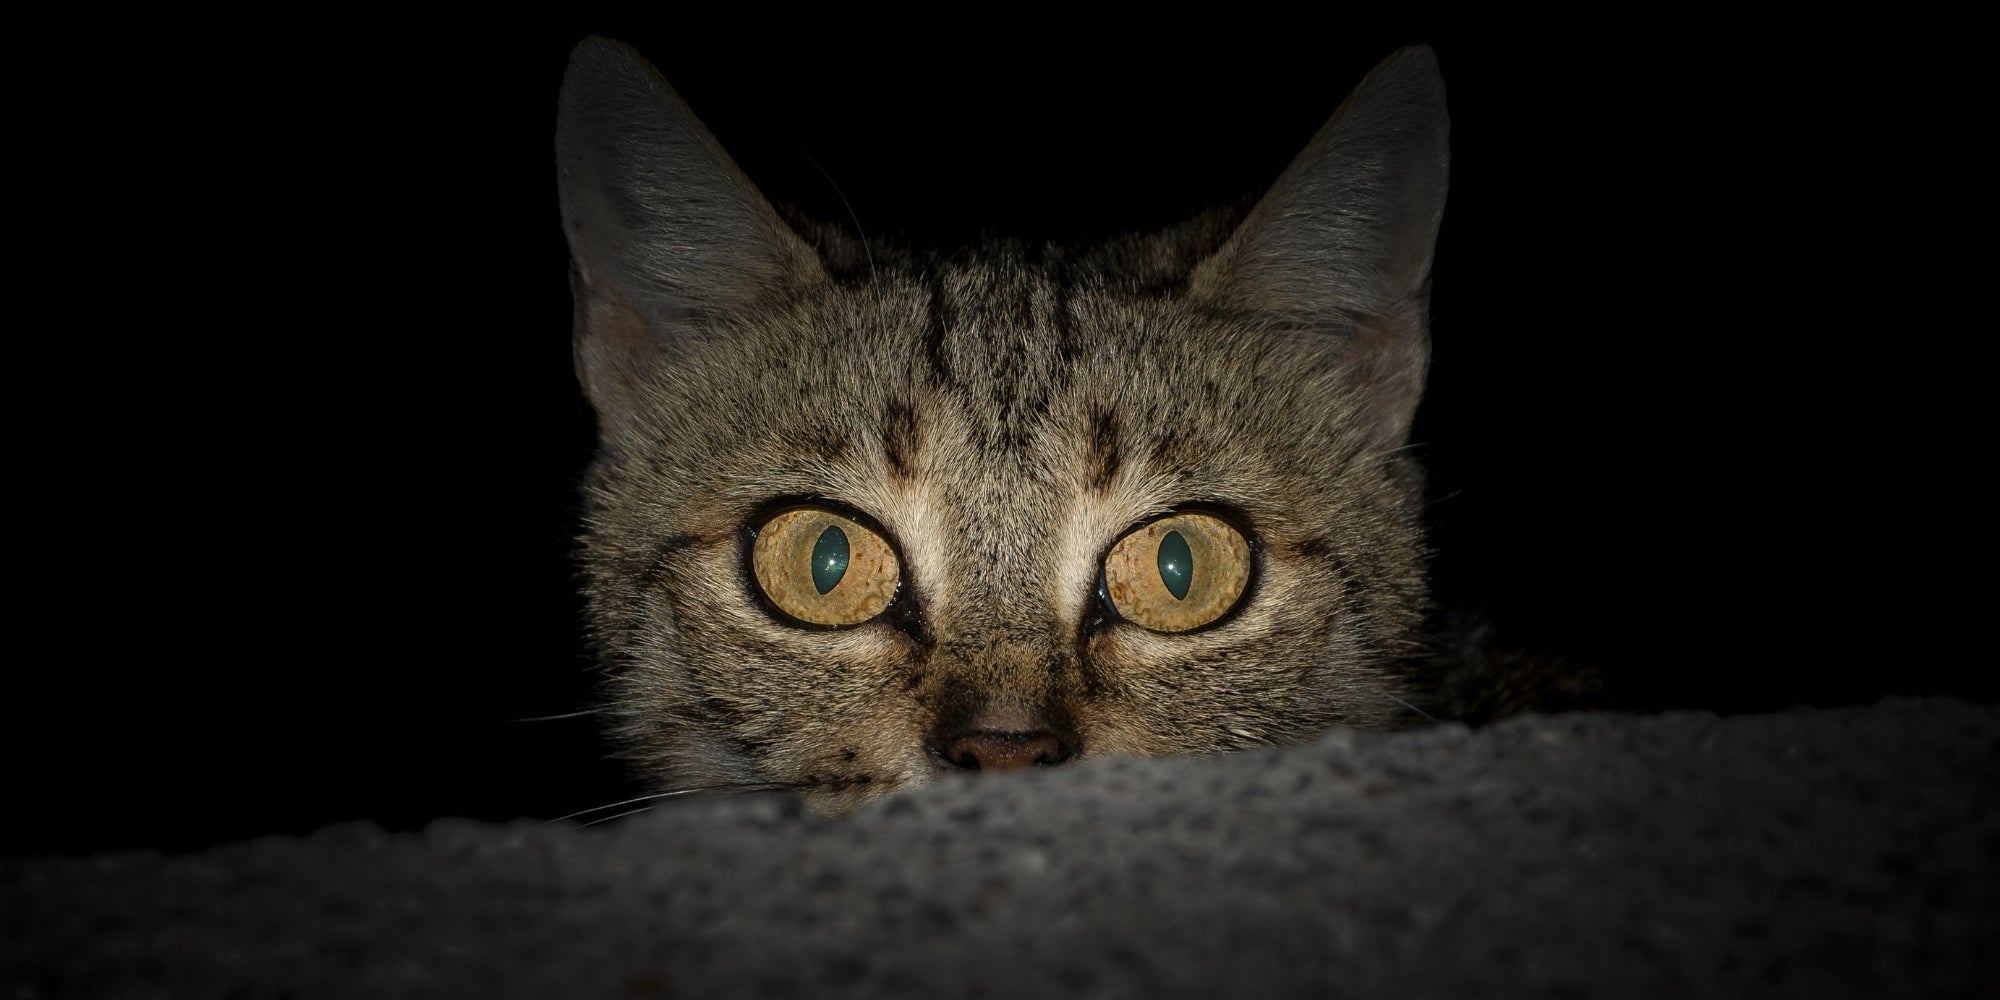 Un gato mirando ansiosamente desde un rincón oscuro